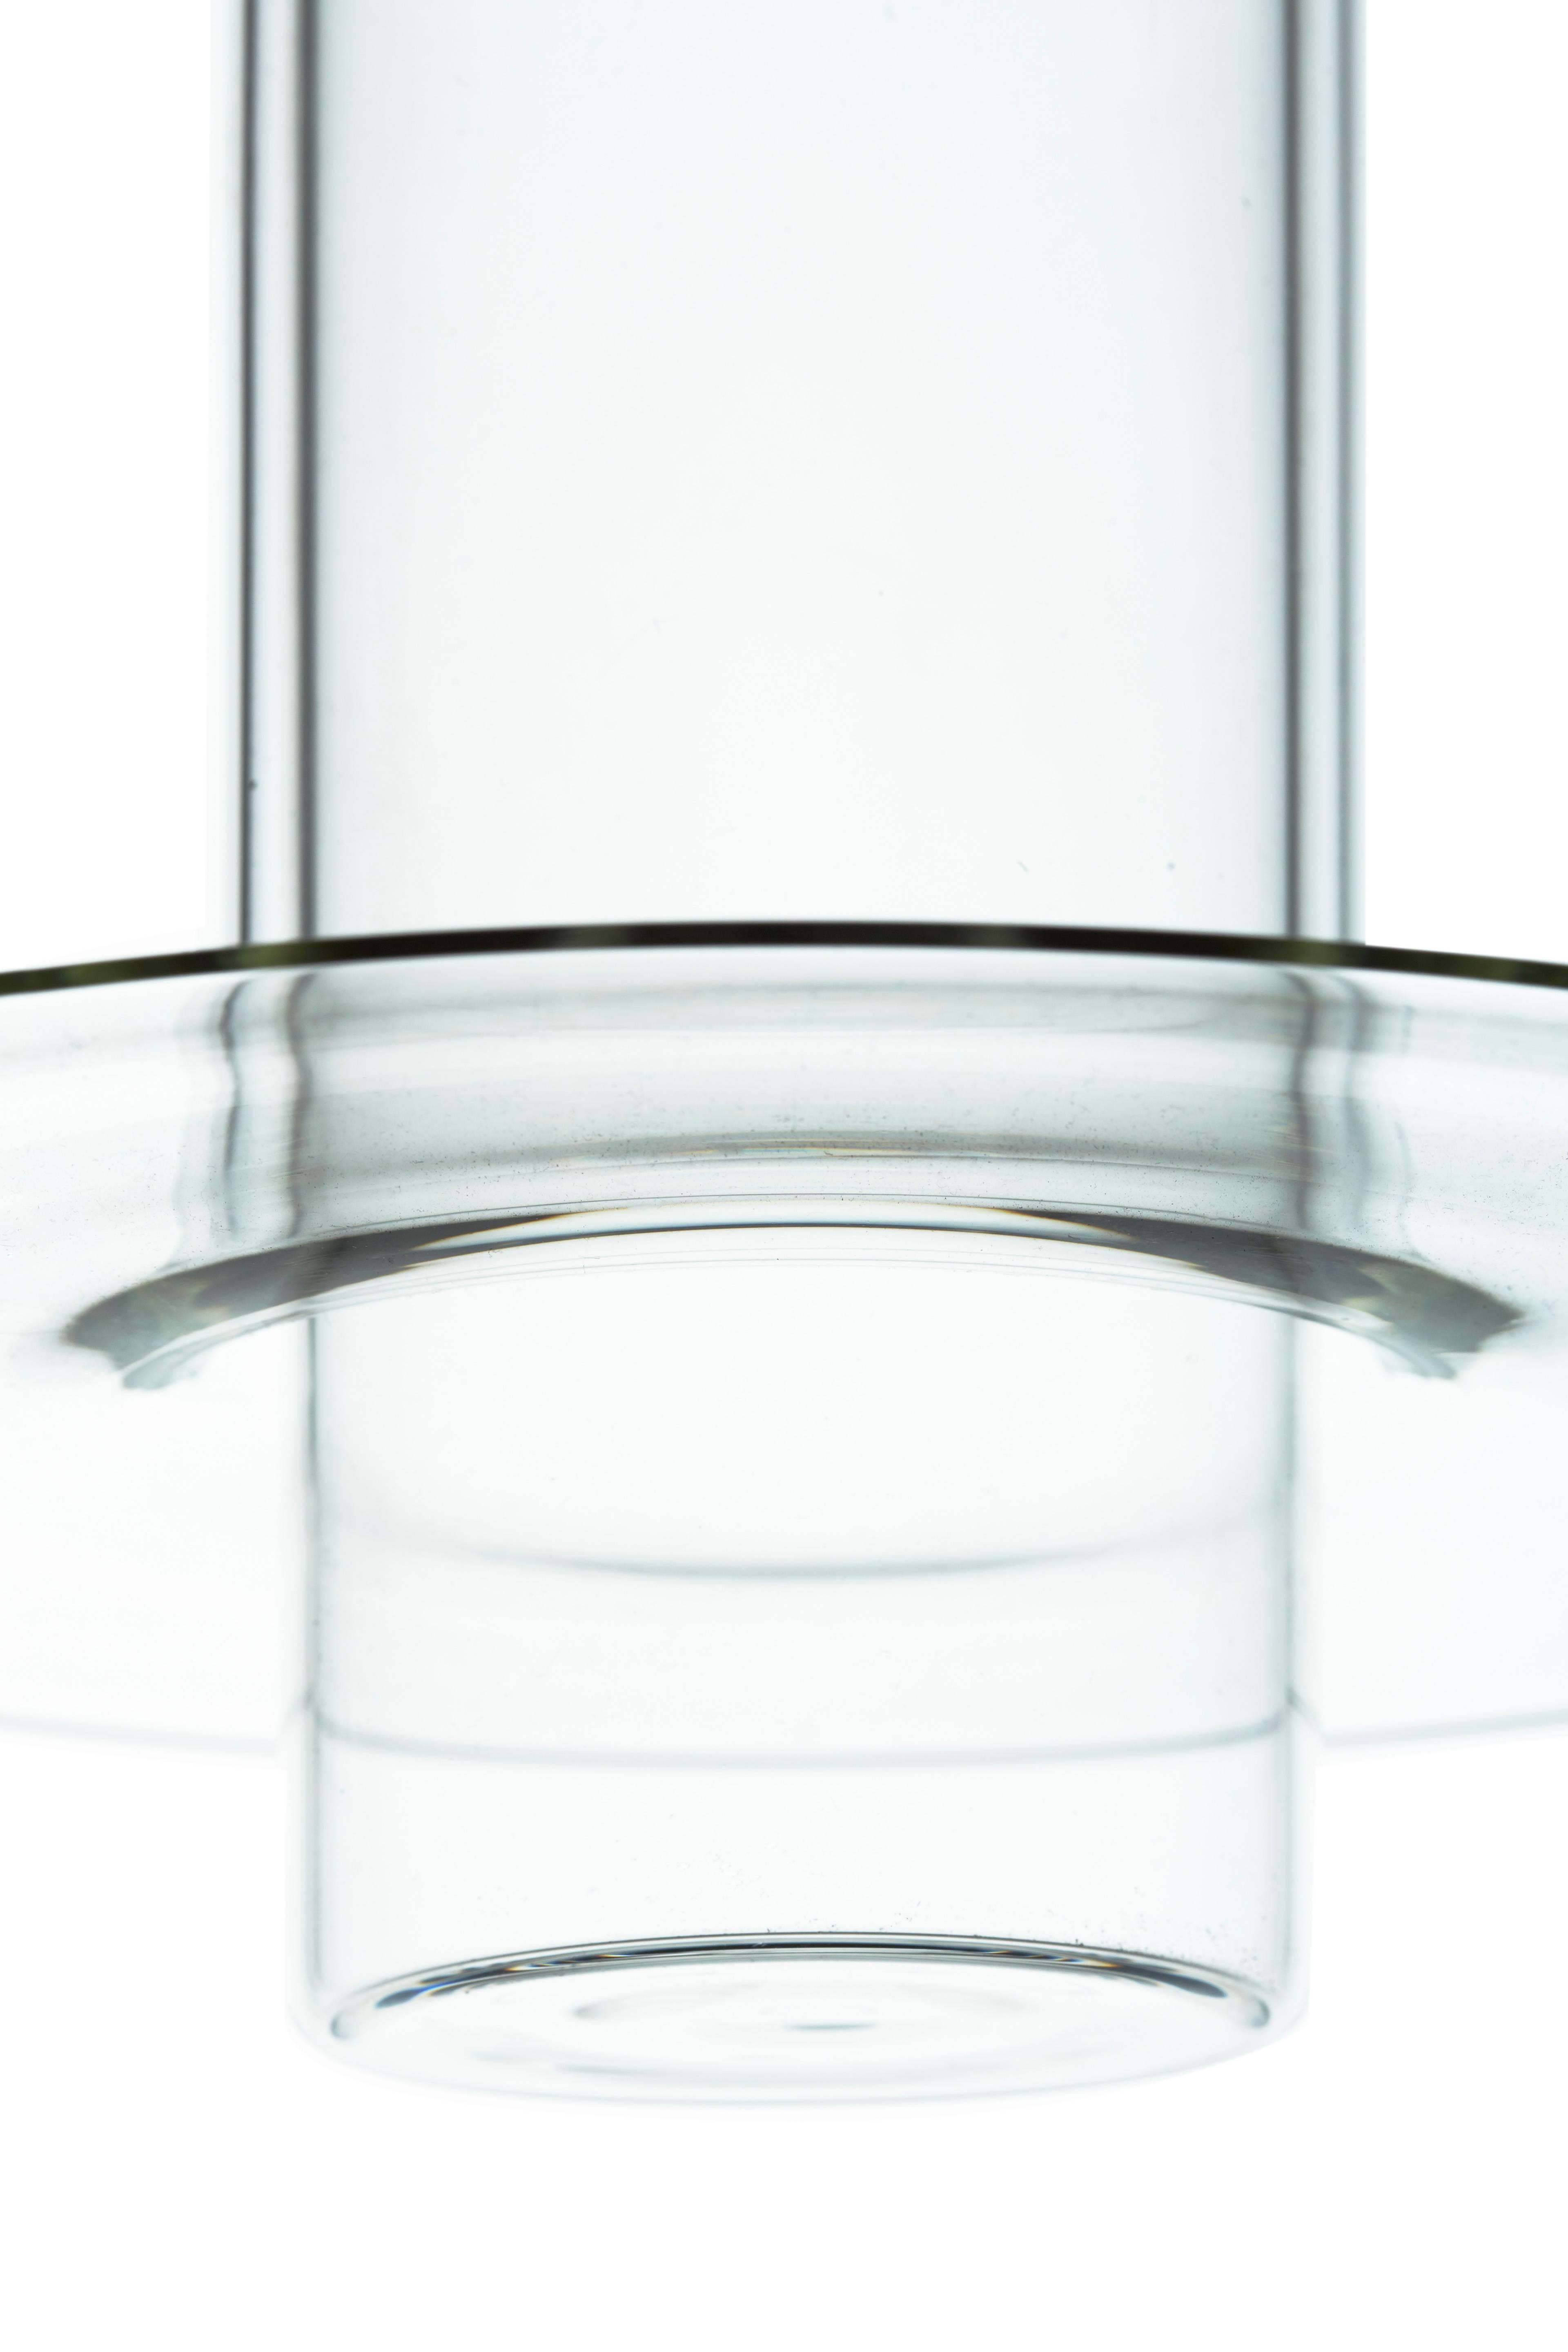 Pawsons Entwurf setzt einen handgefertigten Glaszylinder in einen anderen, wobei sich der äußere Zylinder an seinem unteren Rand zu einer raffinierten Scheibenlippe erweitert. Die Lampe wirft ihr Licht nach unten, aber ihr klarer Körper leuchtet